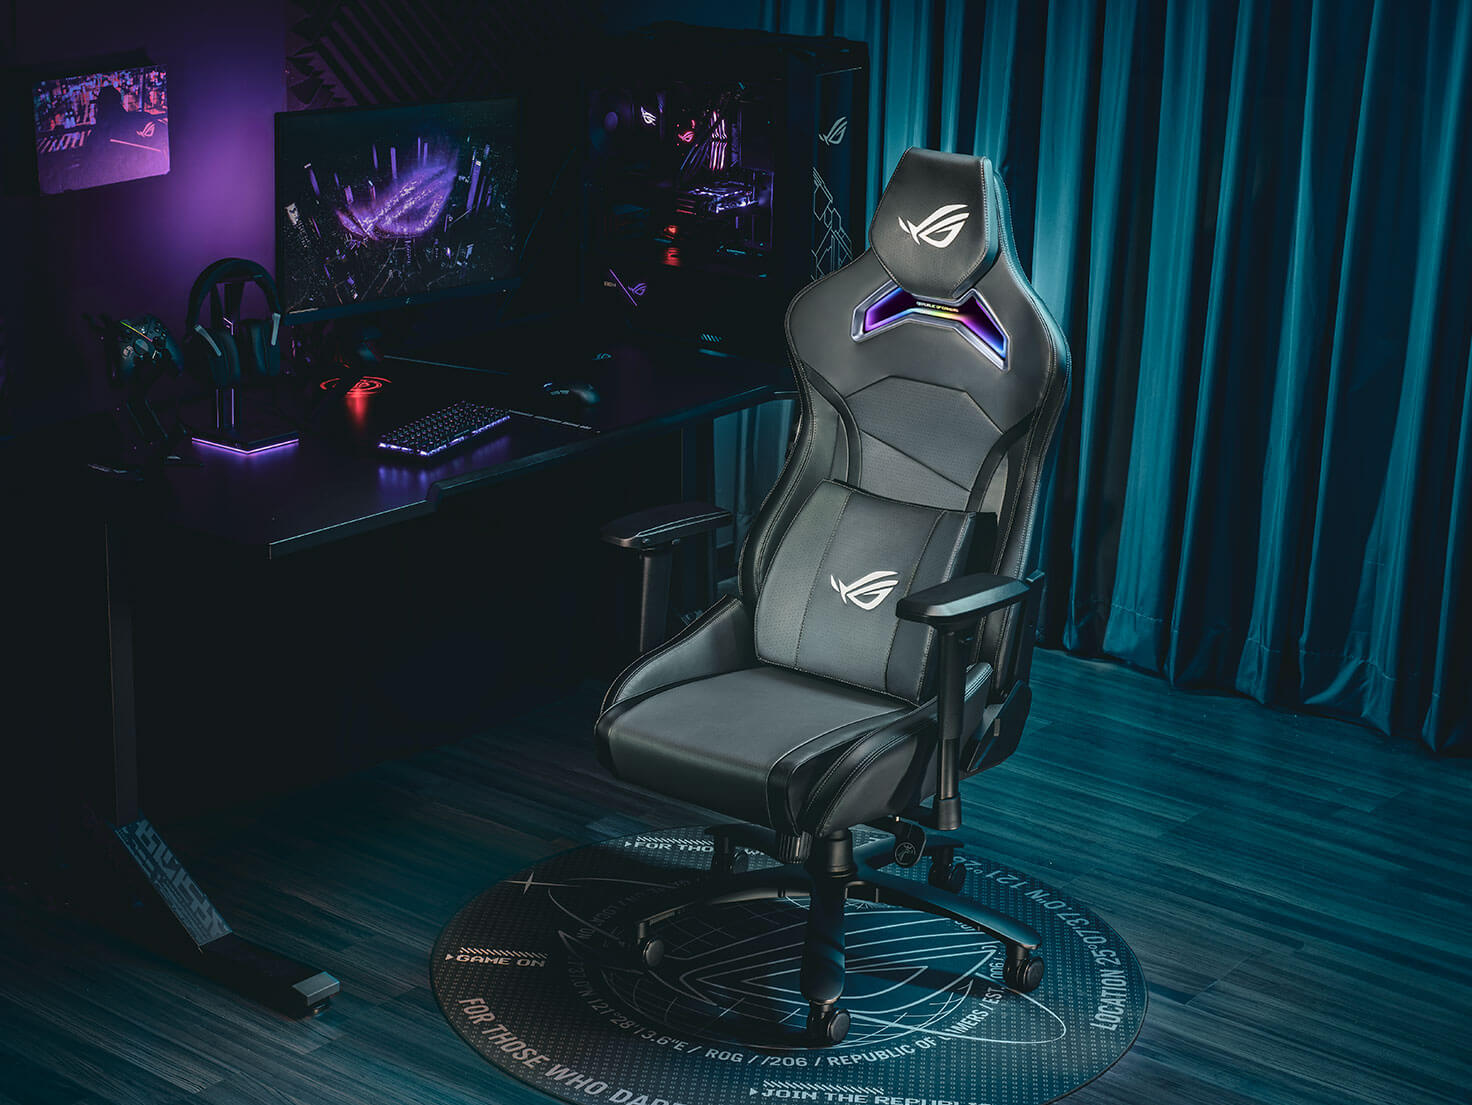 ROG Chariot X gaming-stoel vooraanzicht naar links in een game room omgeving